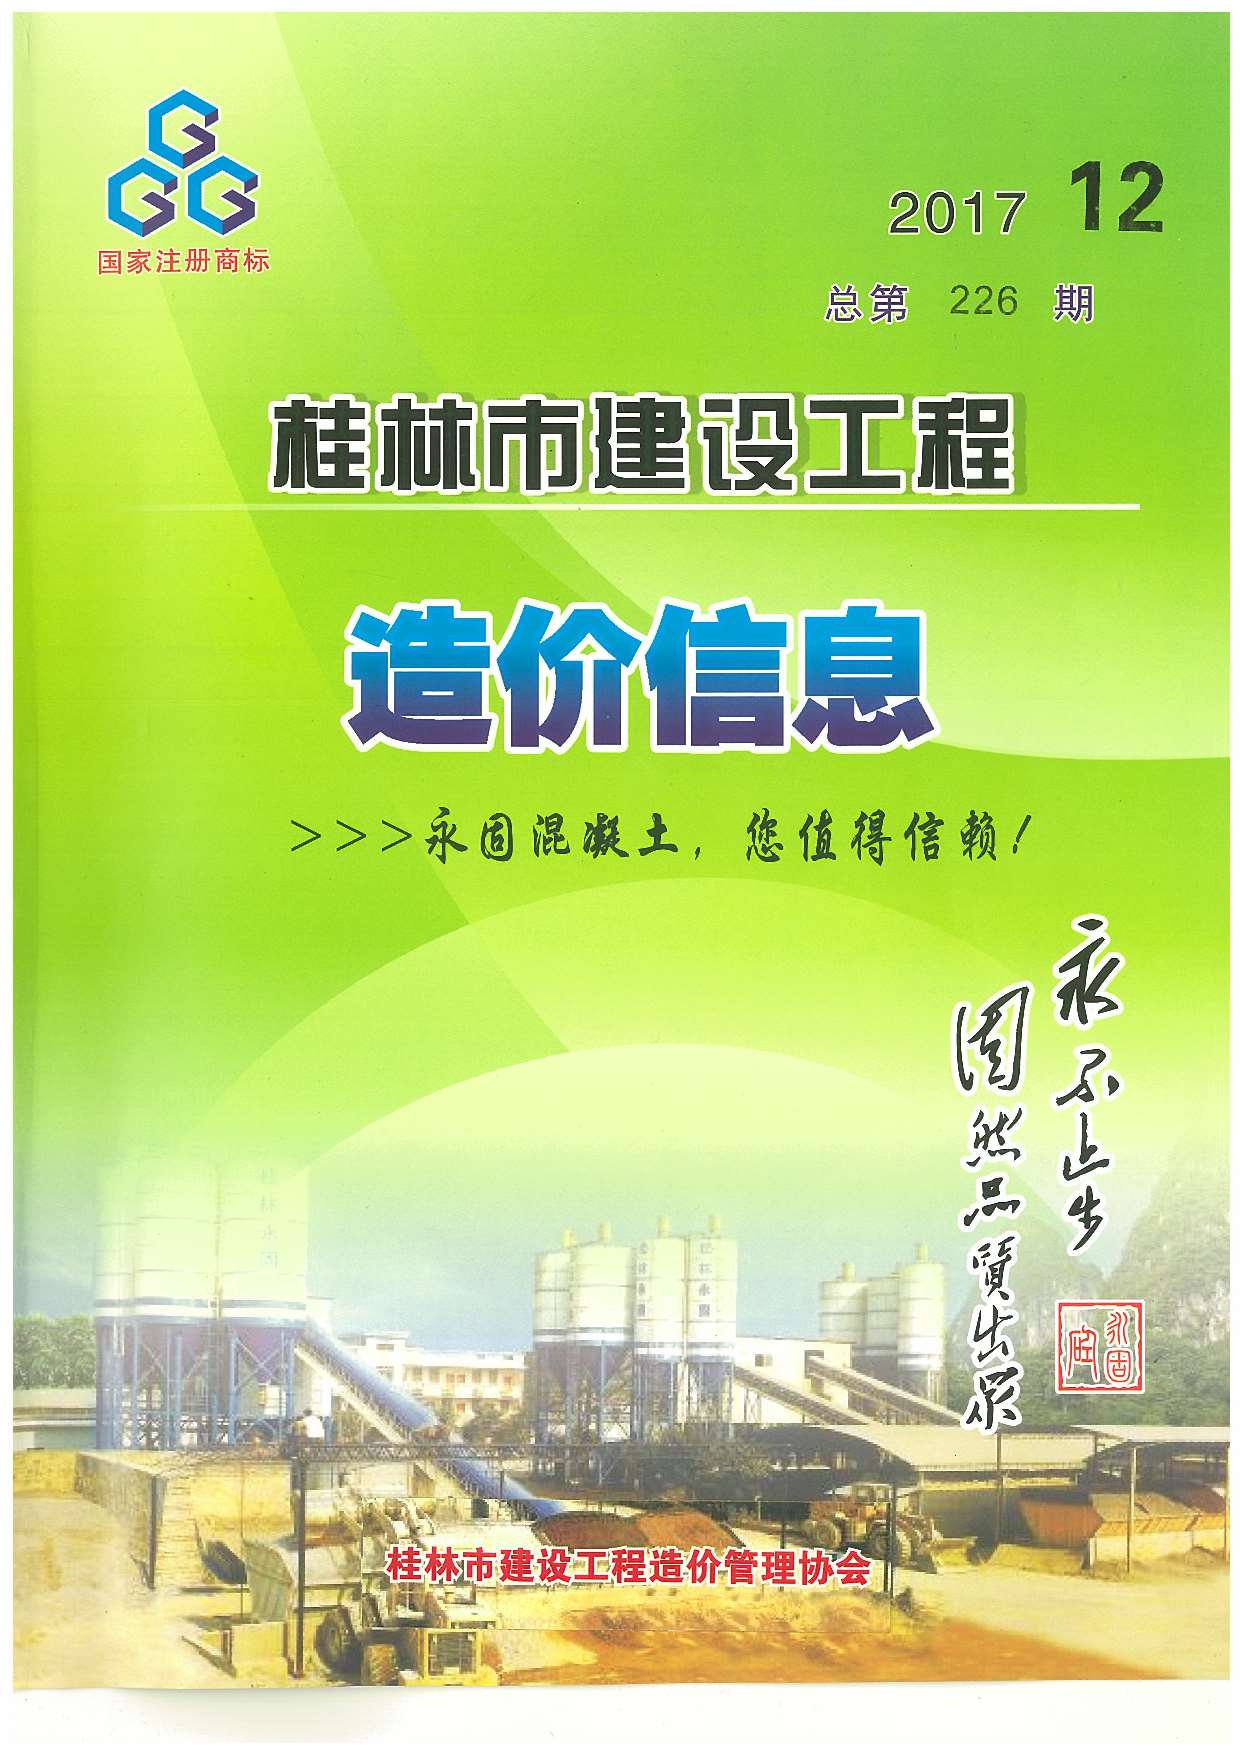 桂林市2017年12月建设工程造价信息